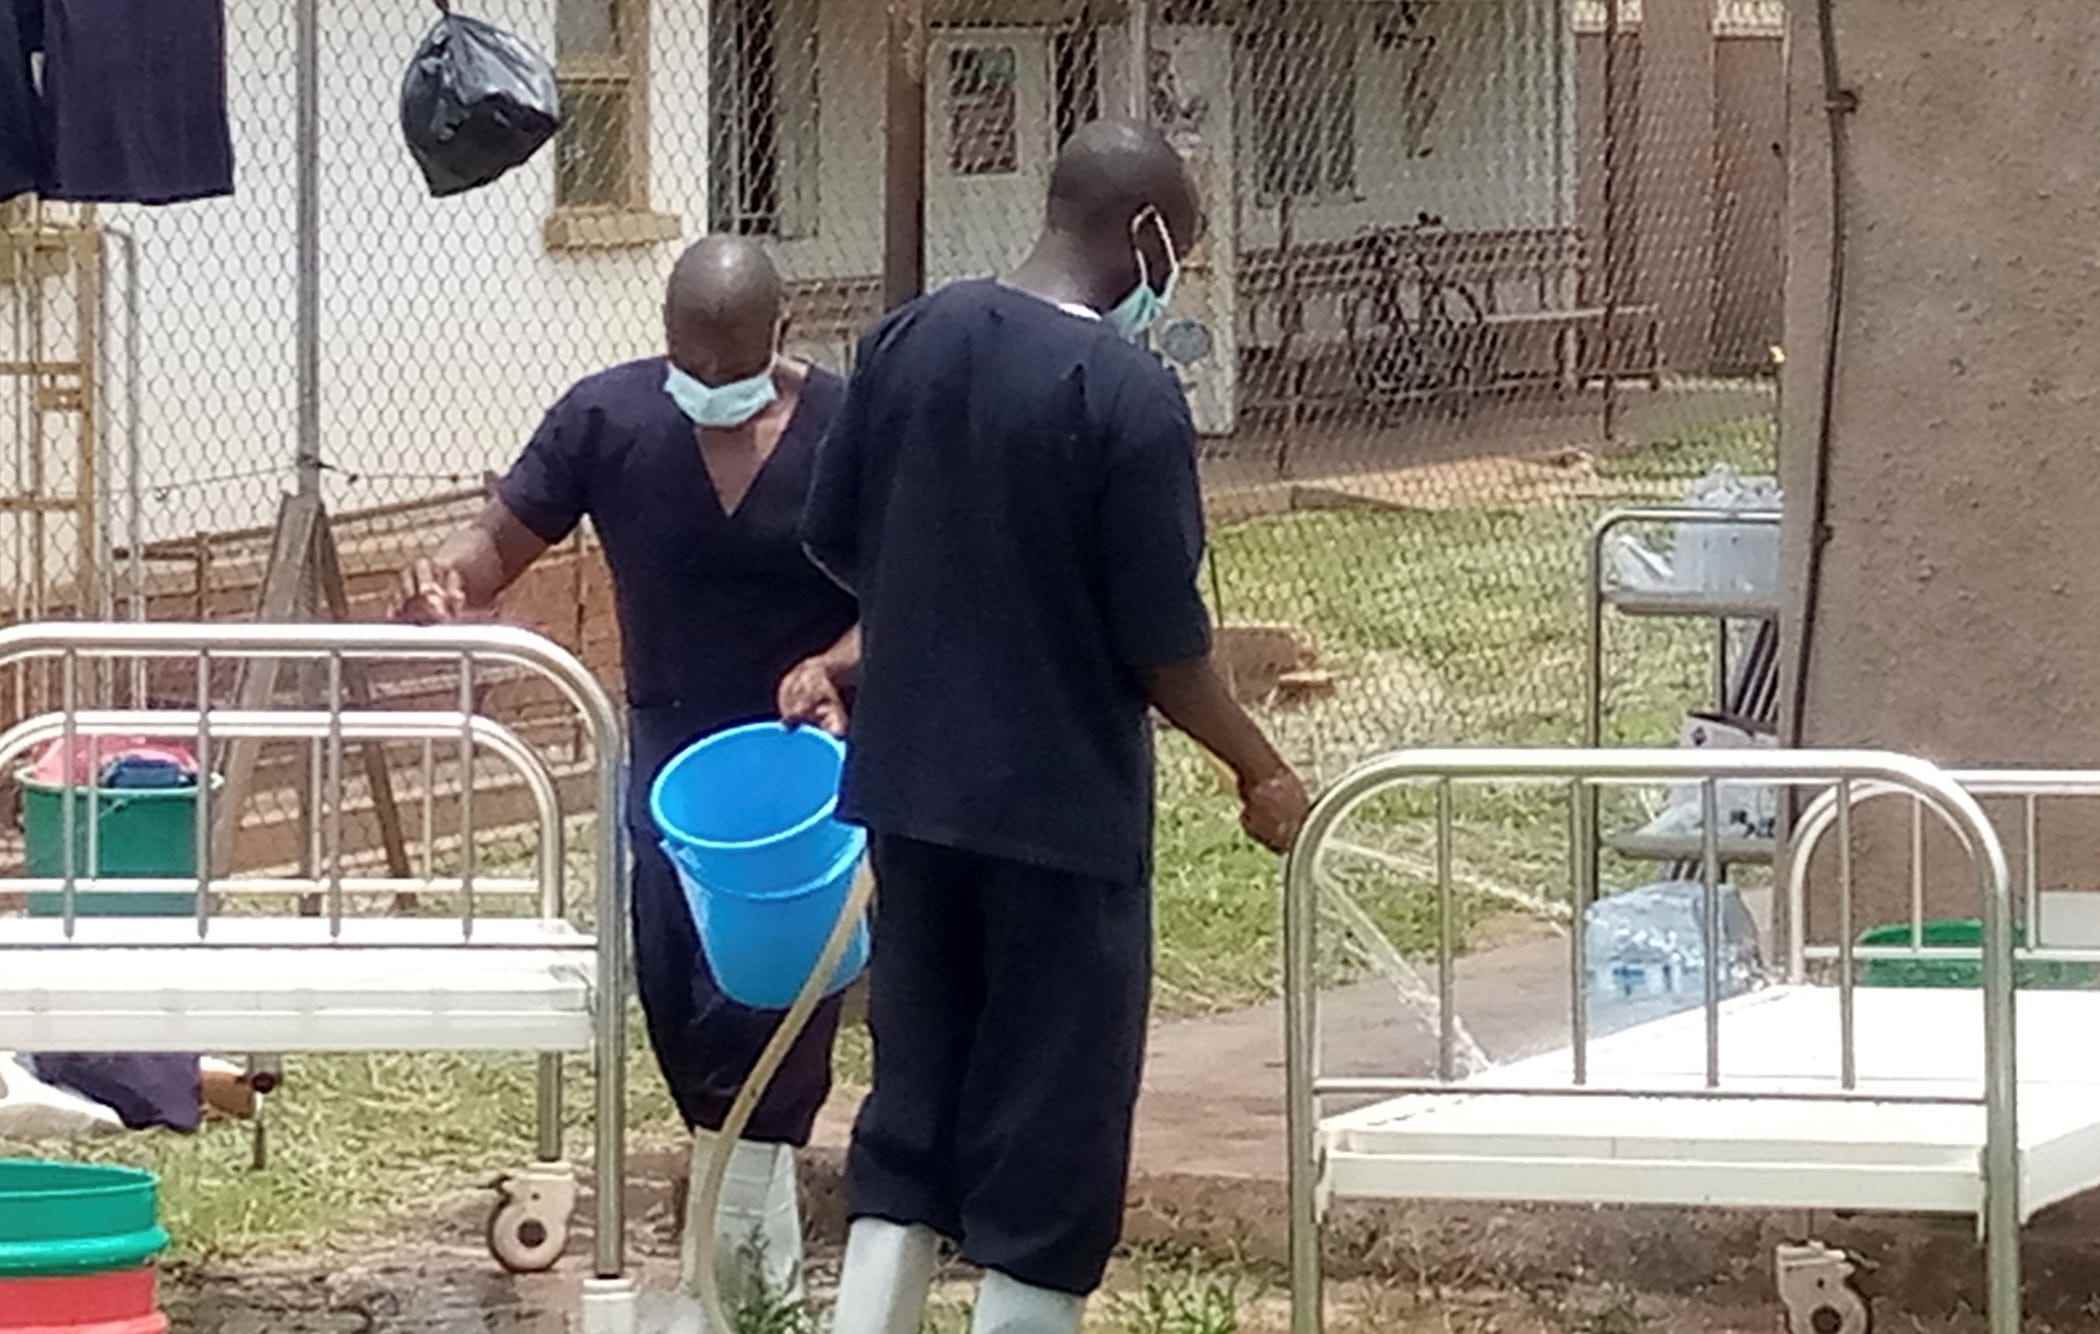 Zwei Männer in Kitteln und Masken draußen, die Betten von Ebola-Patienten mit Eimern desinfizieren